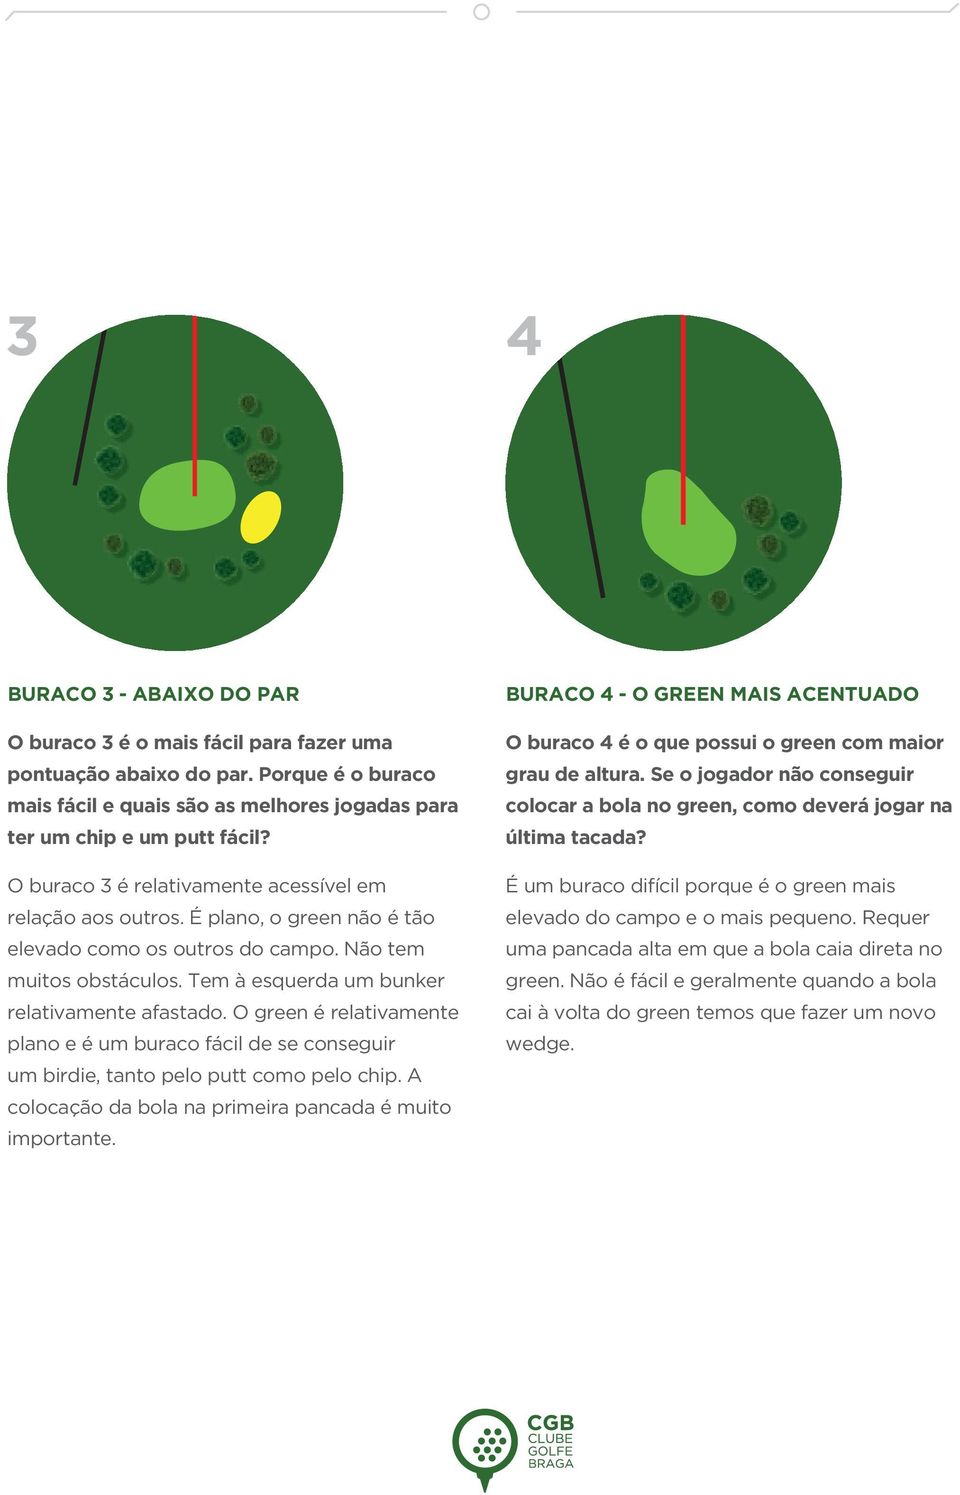 O green é relativamente plano e é um buraco fácil de se conseguir um birdie, tanto pelo putt como pelo chip. A colocação da bola na primeira pancada é muito importante.